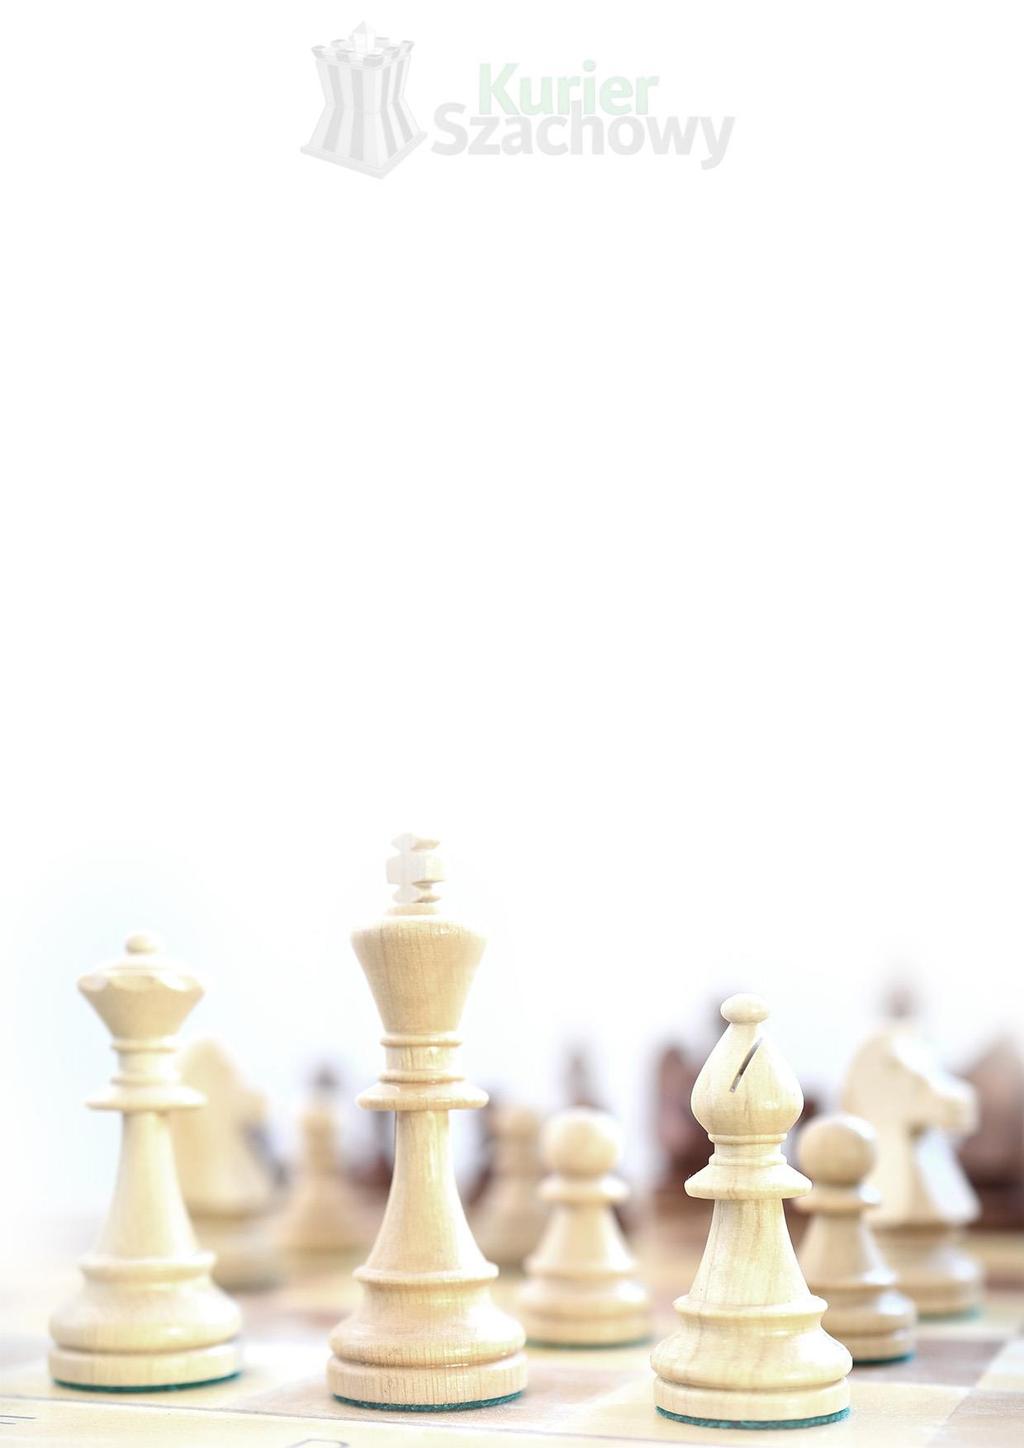 .. 84 Wielka Księga Olimpiad Szachowych... 85 Okładka: Uczestnicy turnieju GRENKE http://www.grenkechessclassic.de Praktyka szachowa - rozwiązanie zadań: 1791. 15.Gh7! Kh7 16.Sg5 Kg6 17.Hh3 Sde5 18.